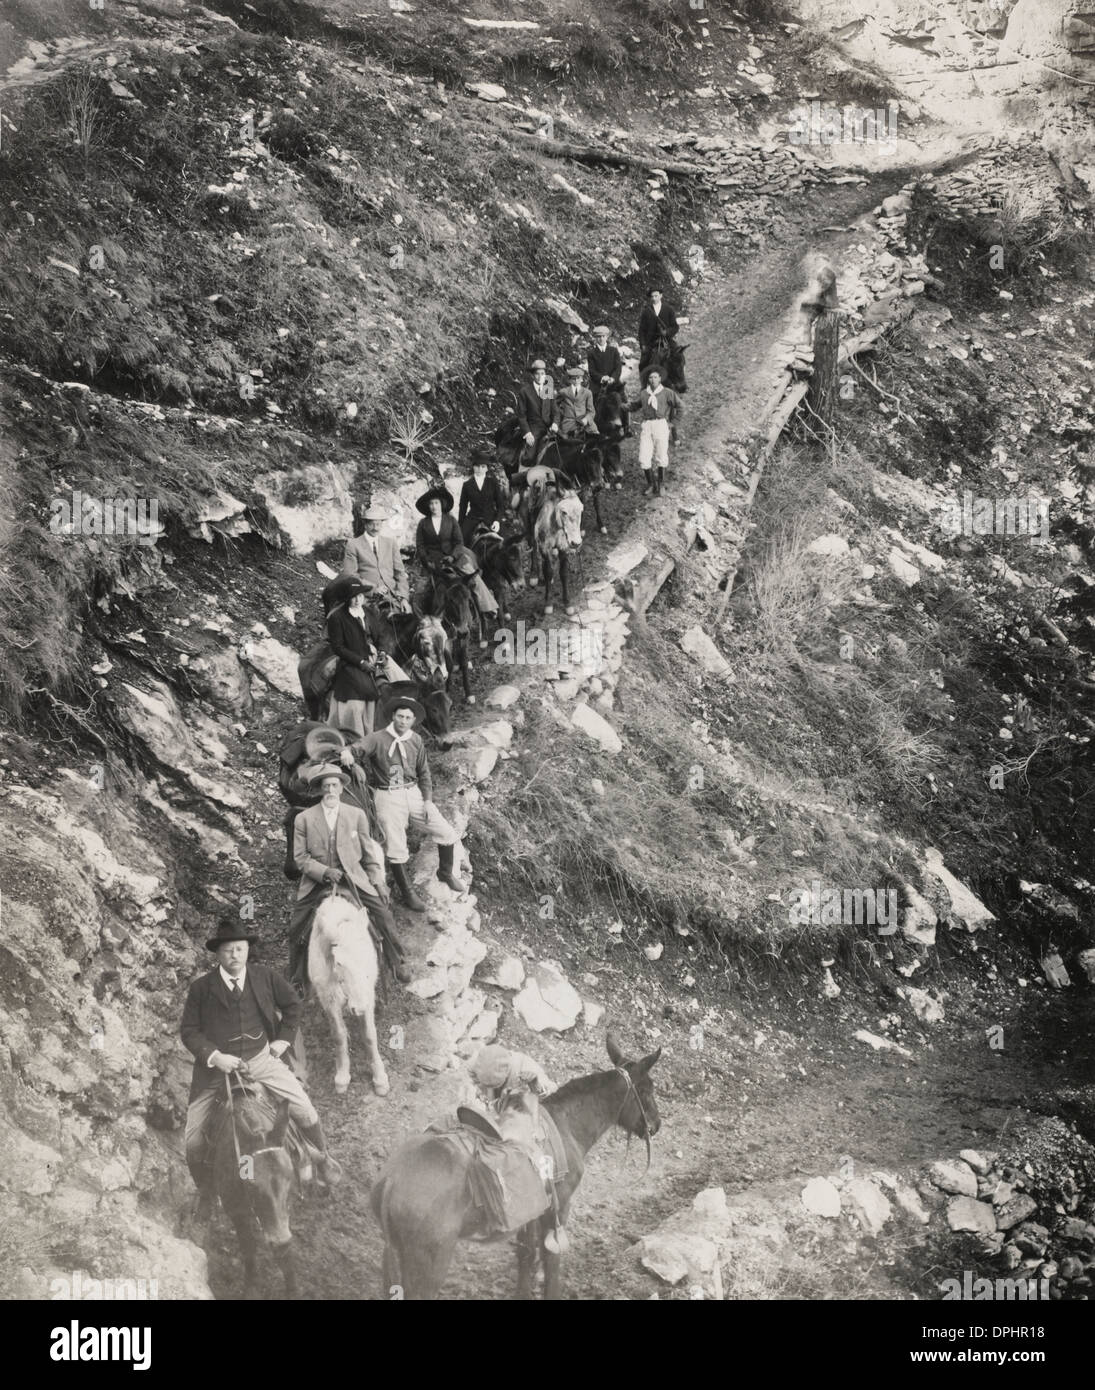 Le Colonel Roosevelt's party en ordre décroissant le Bright Angel Trail, Grand Canyon, 1911 Banque D'Images